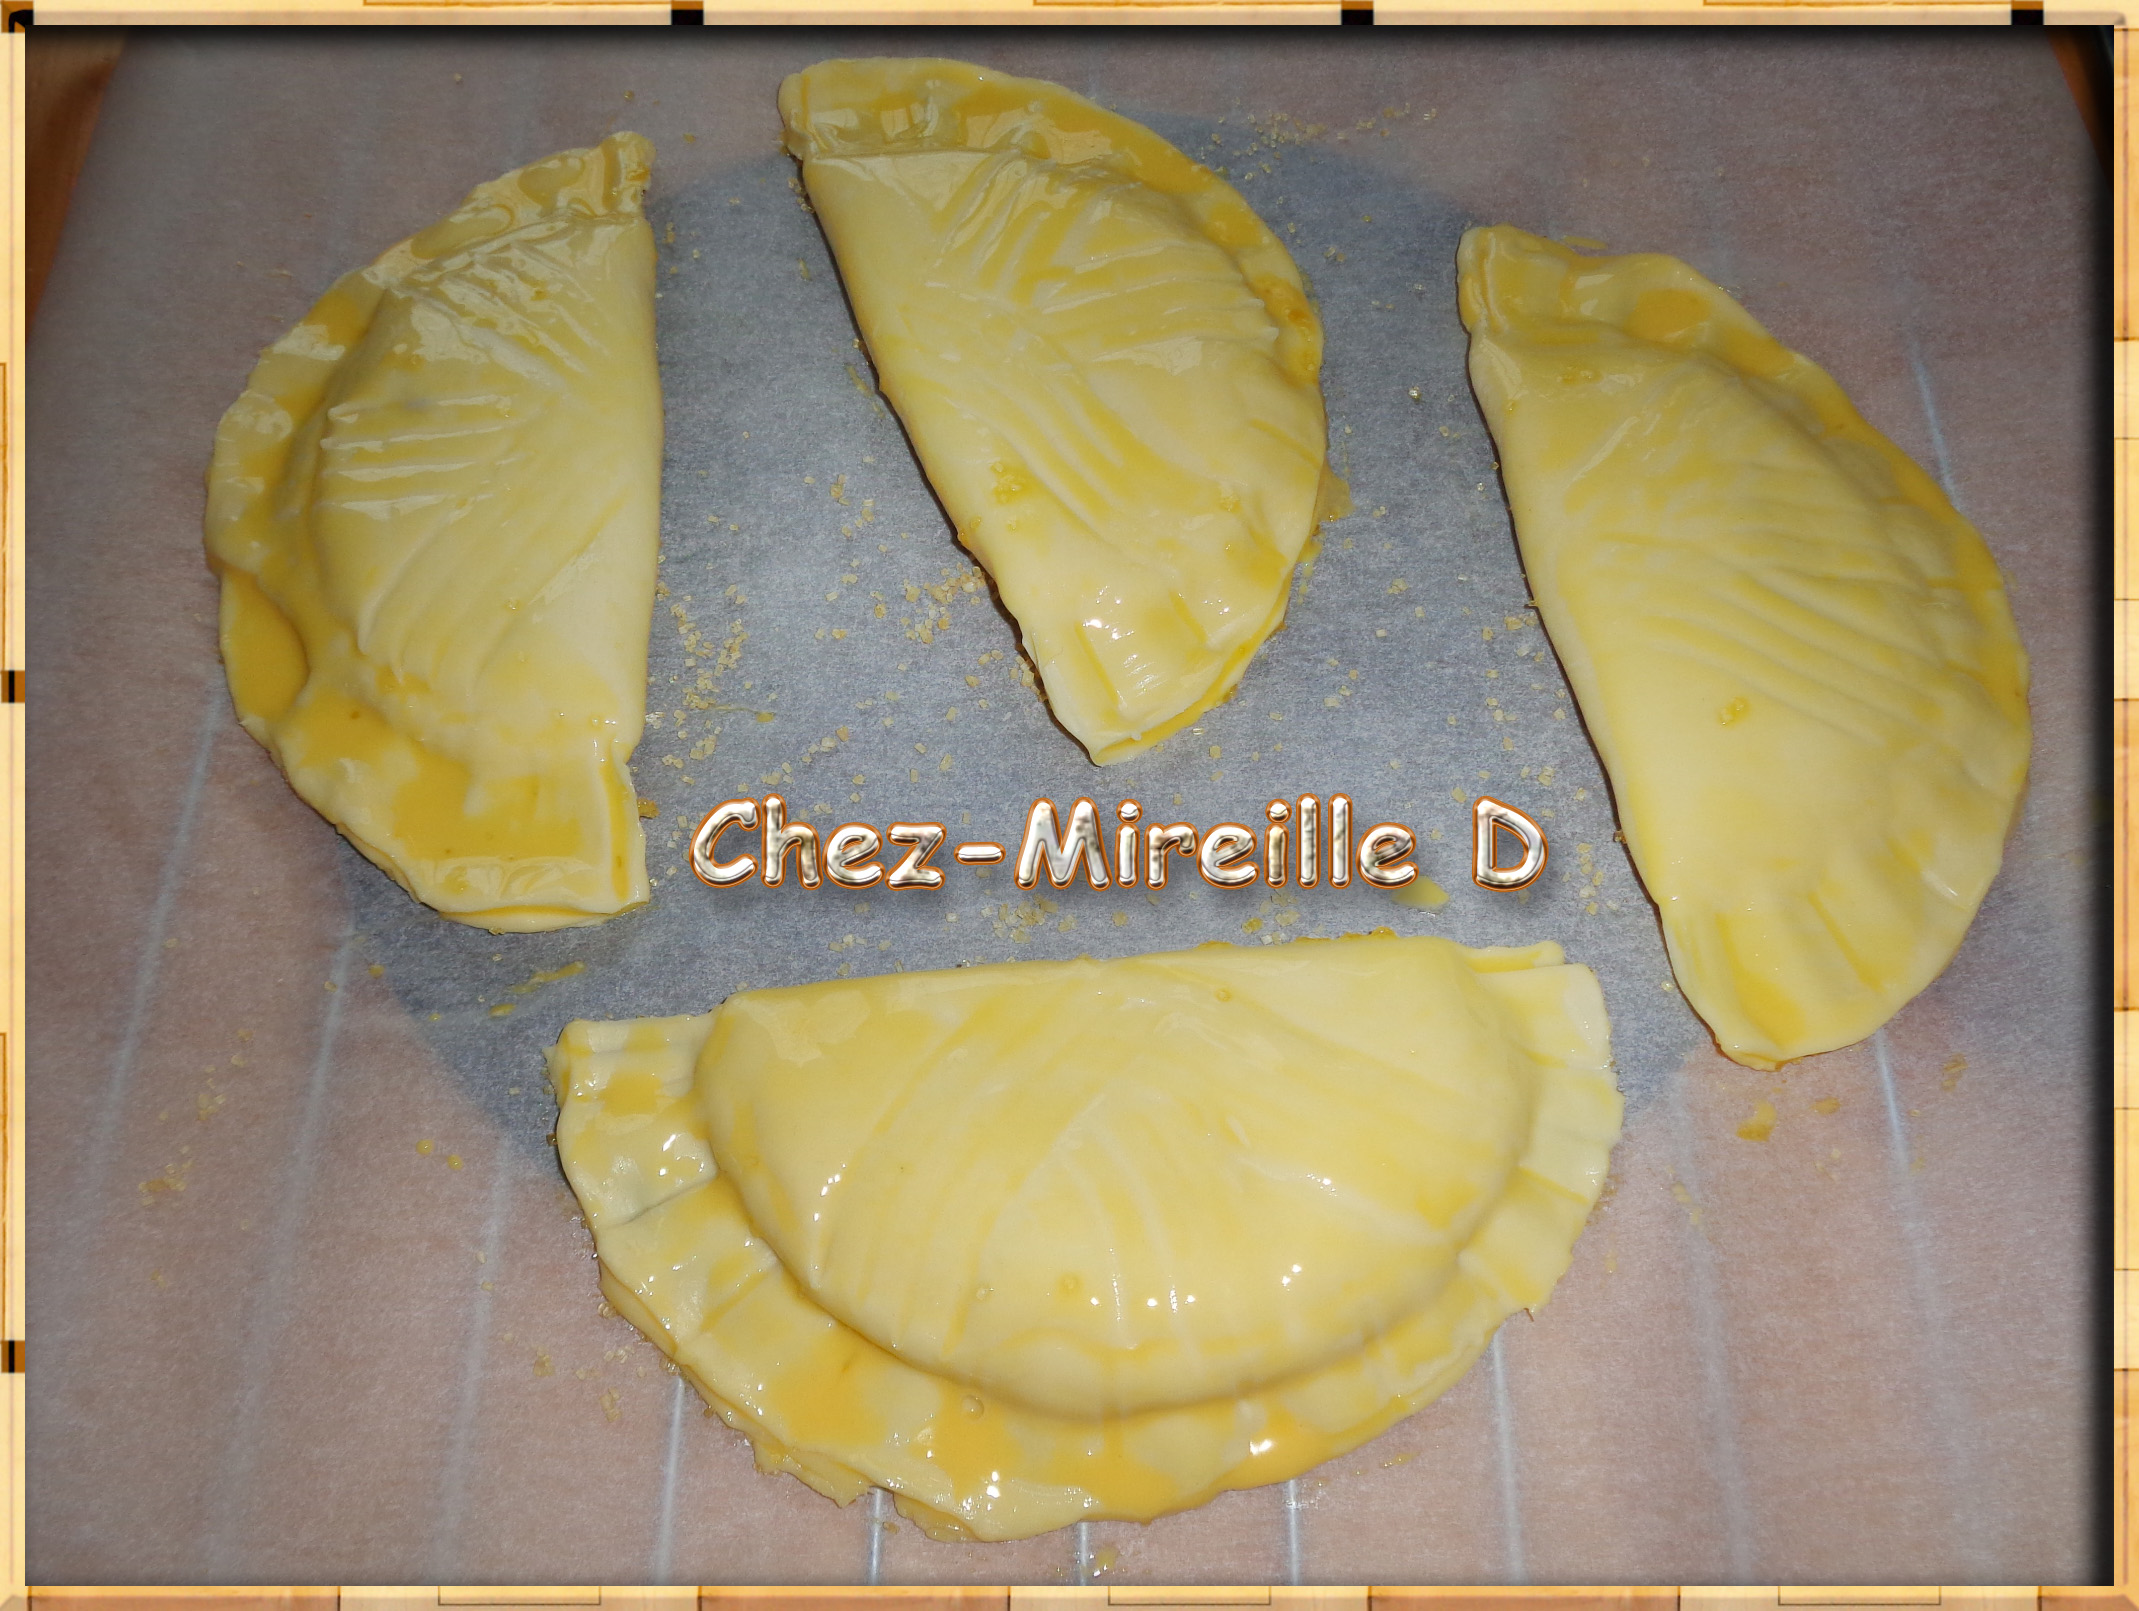 Chaussons à la Compote de Pommes - Recette Tupperware - Chez-Mireille D